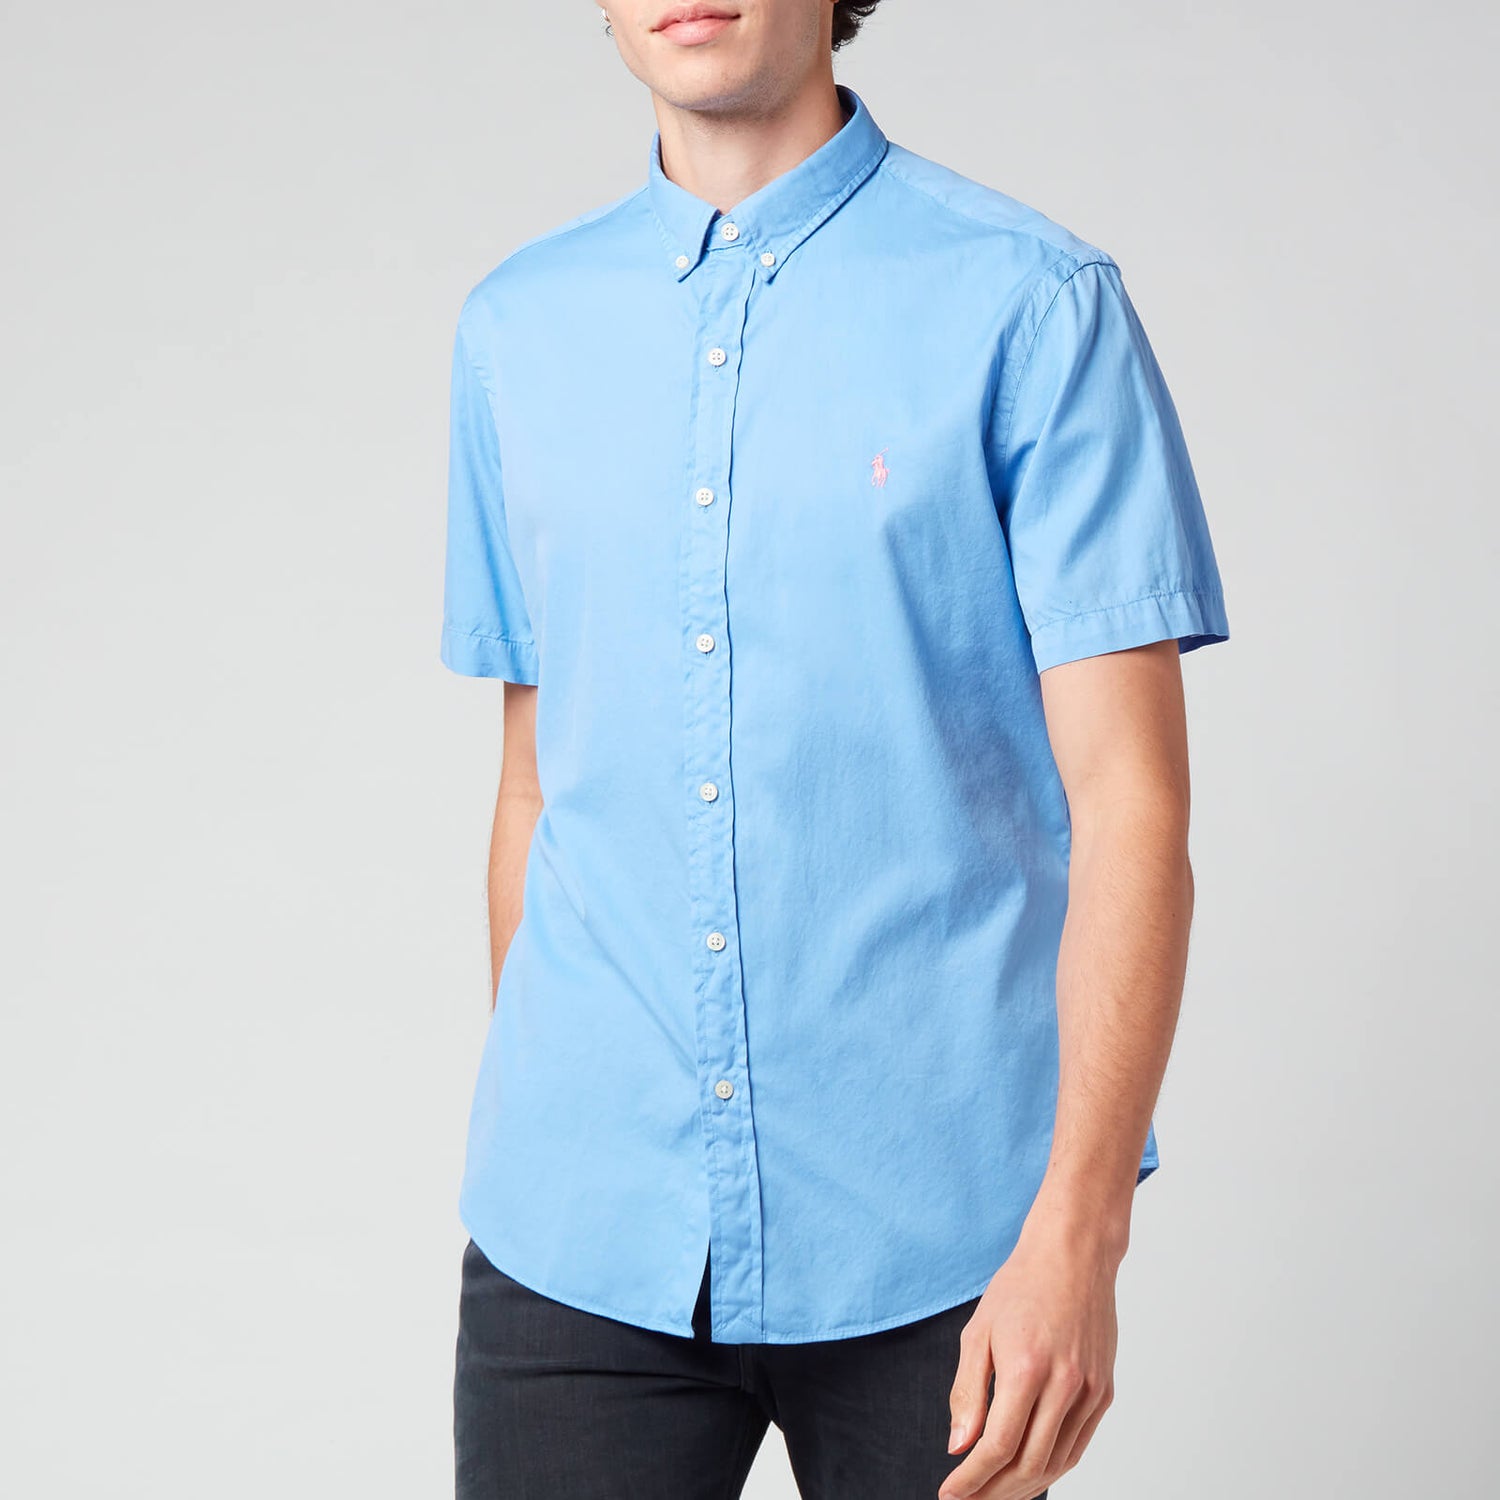 Polo Ralph Lauren Men's Slim Fit Garment Dyed Twill Short Sleeve Shirt - Cabana Blue